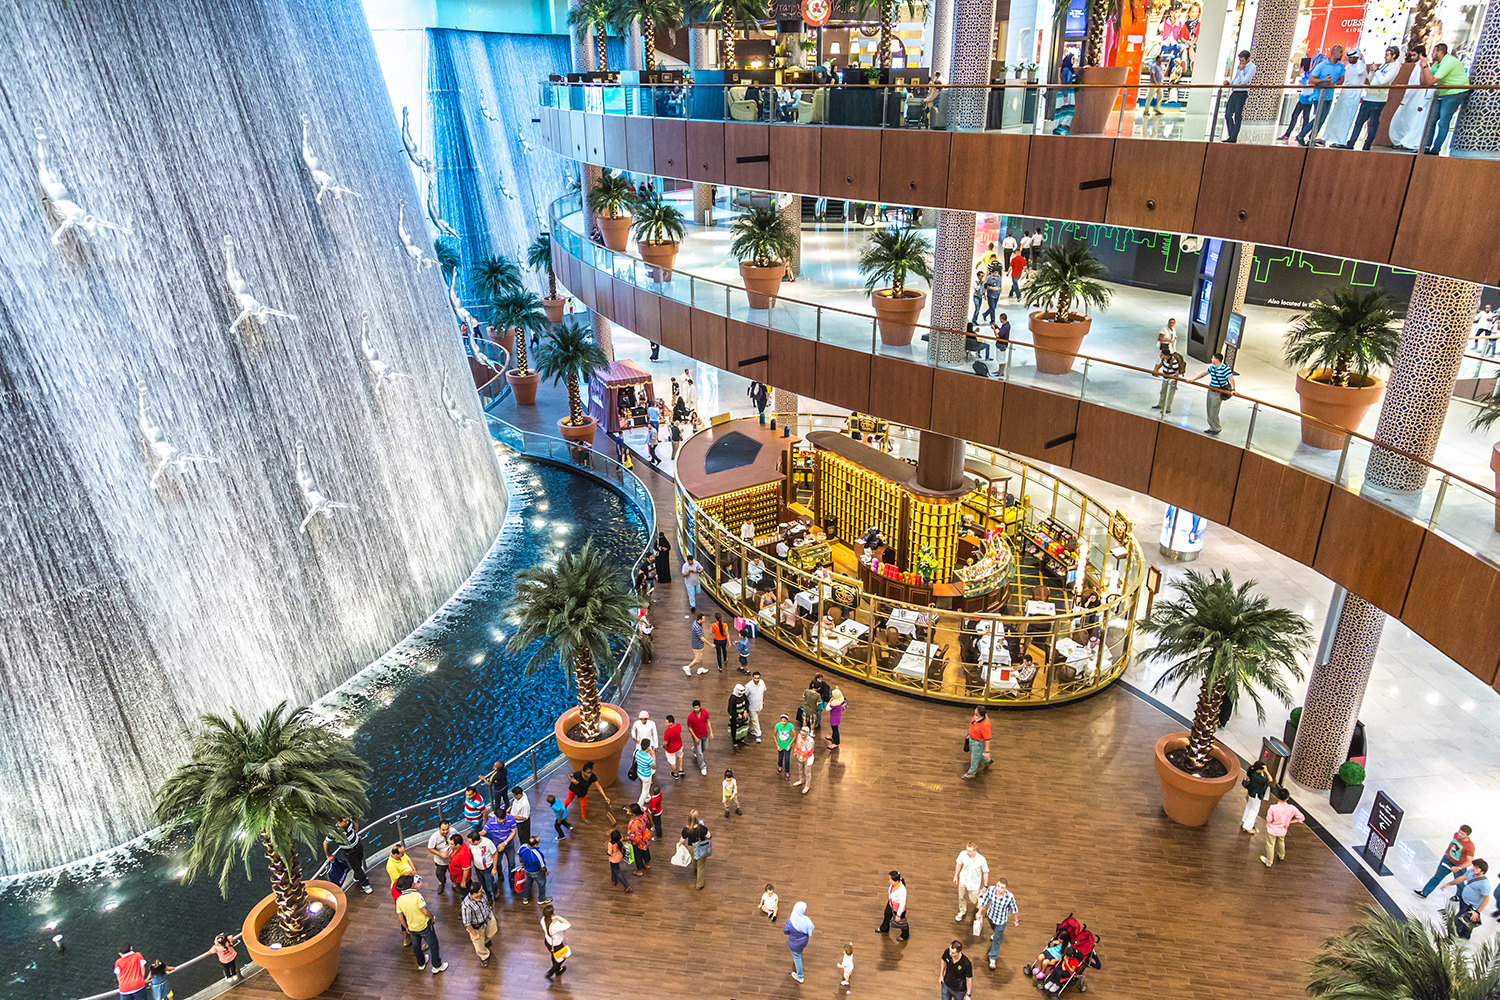 The Dubai Mall Interior